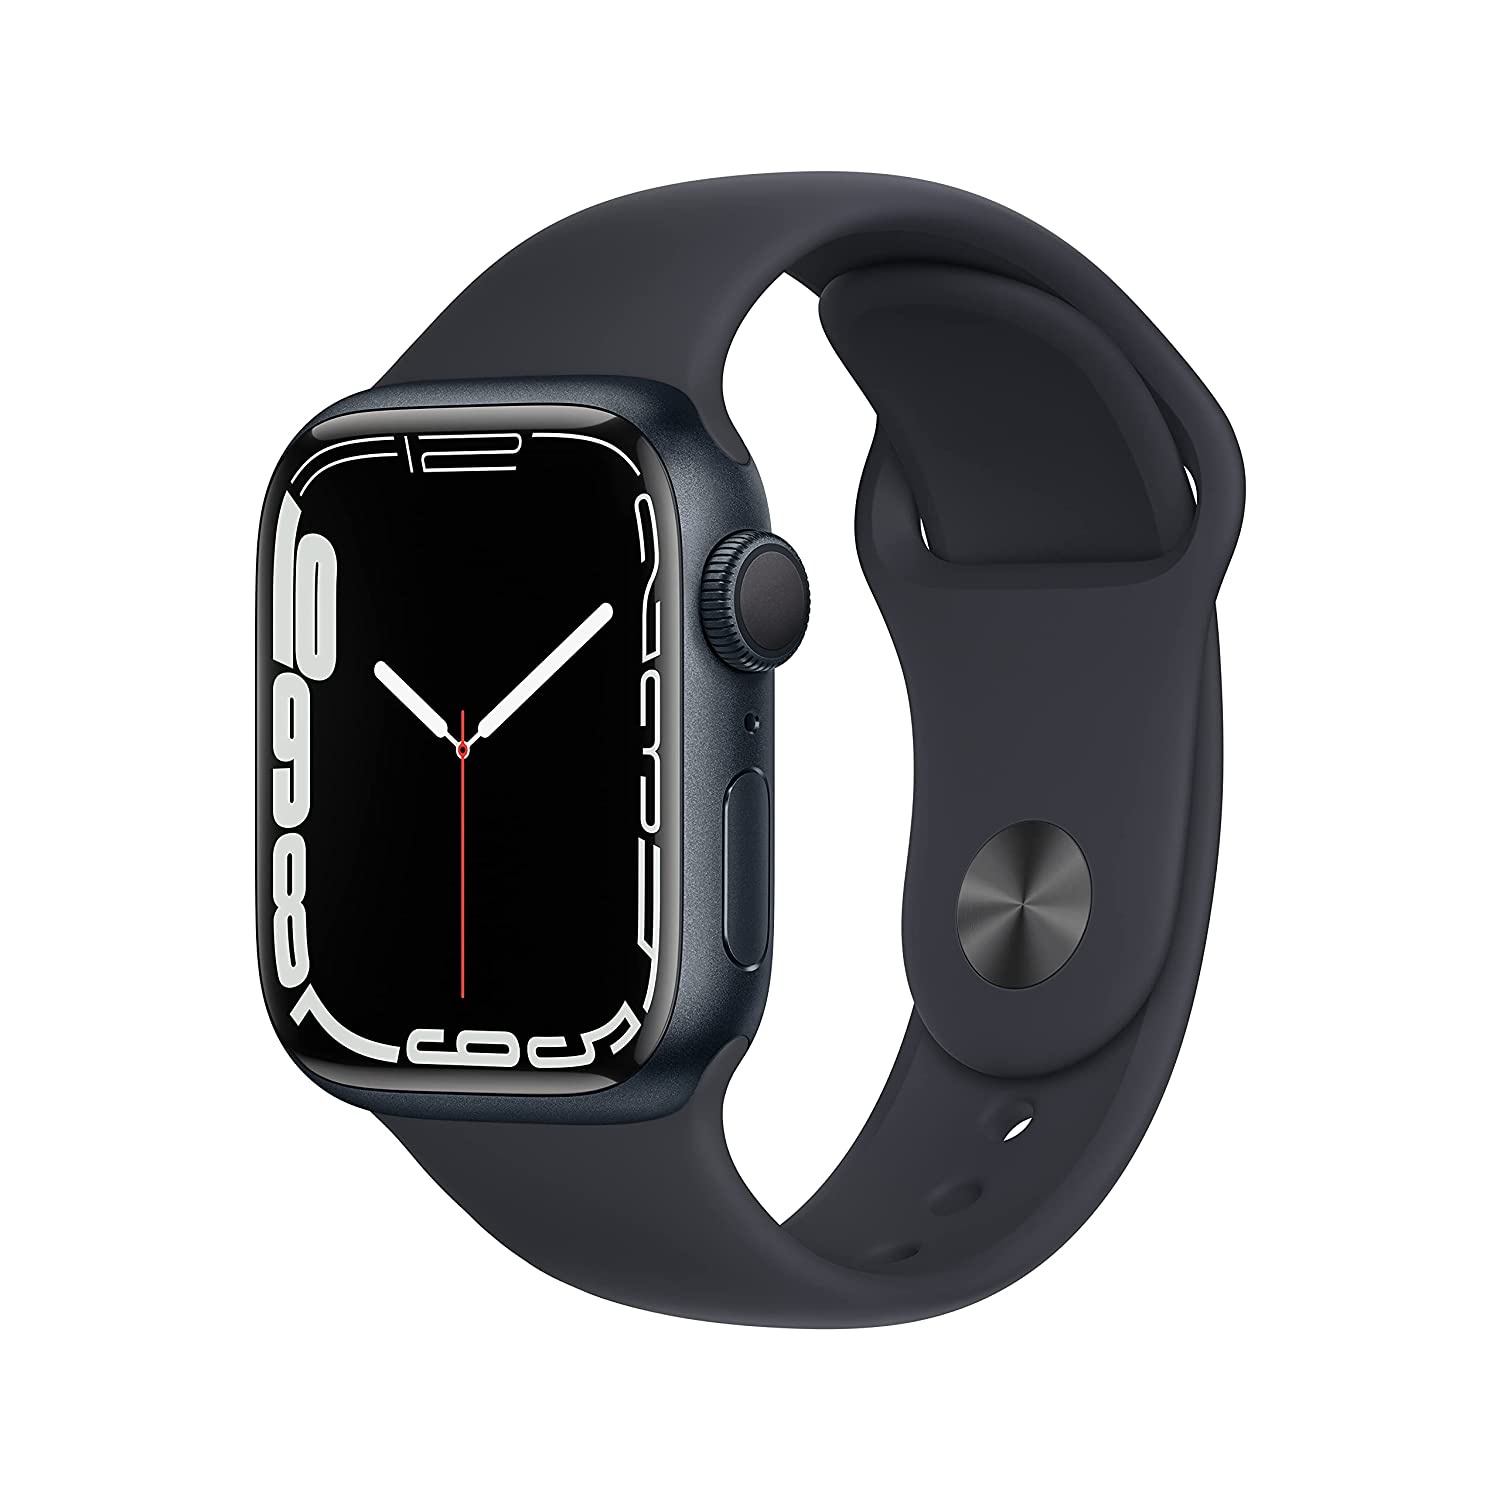 एमेजॉन डील में इन Apple Watch पर मिल रहा है 10 हजार रुपये तक का डिस्काउंट